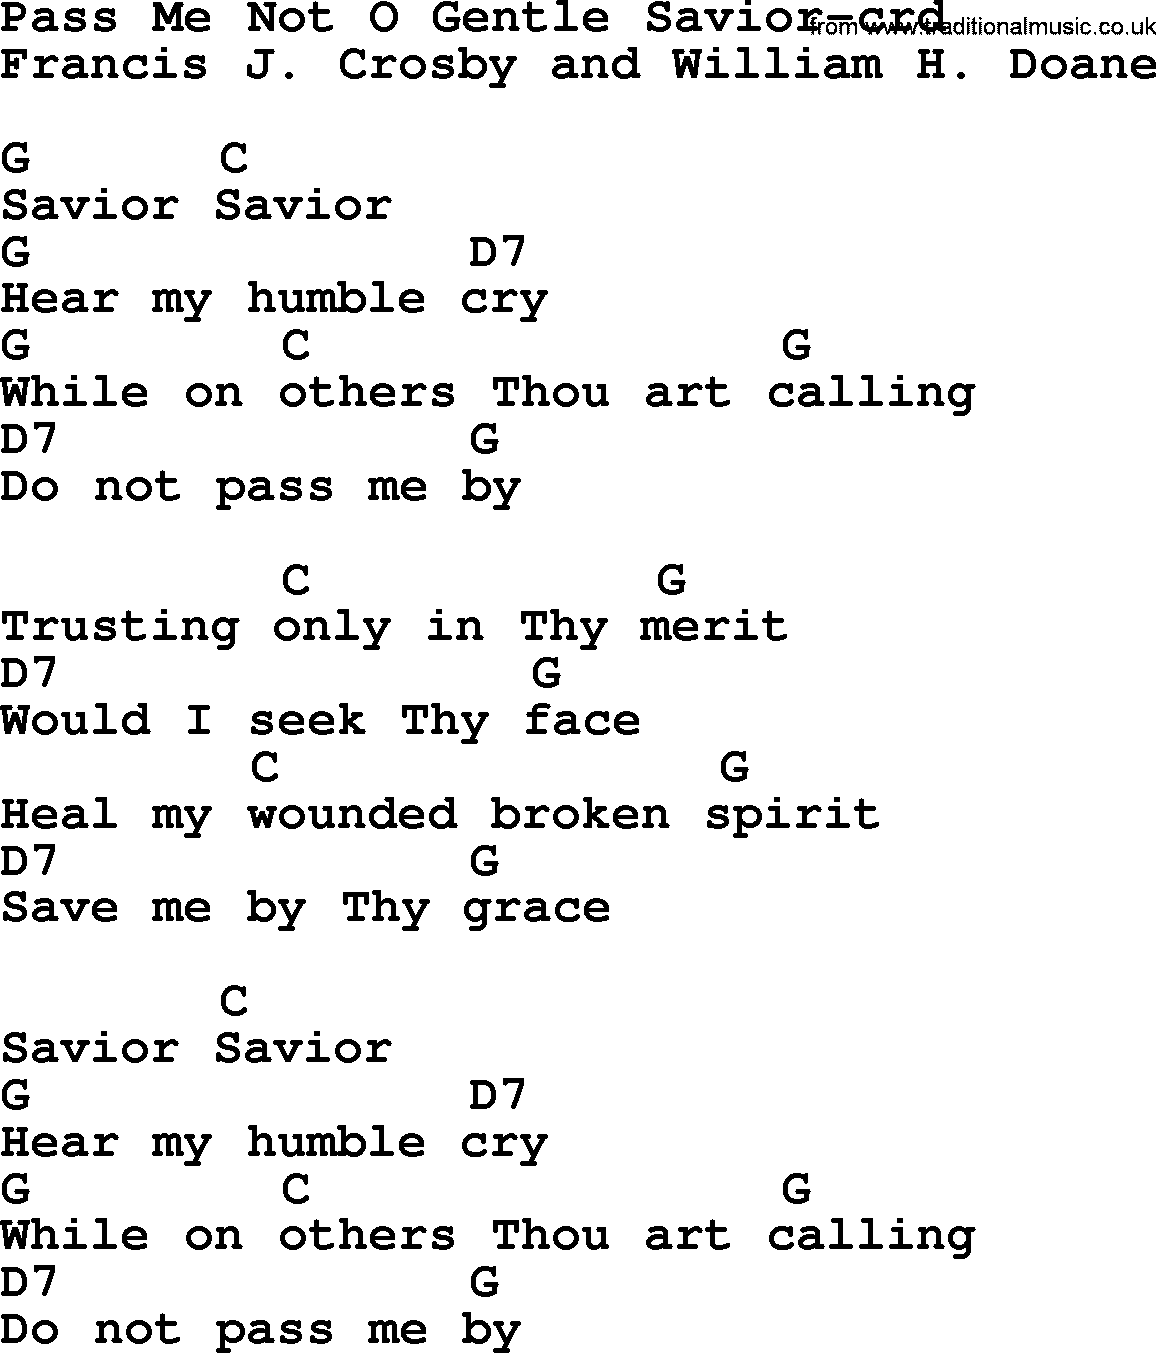 Top 500 Hymn: Pass Me Not O Gentle Savior, lyrics and chords